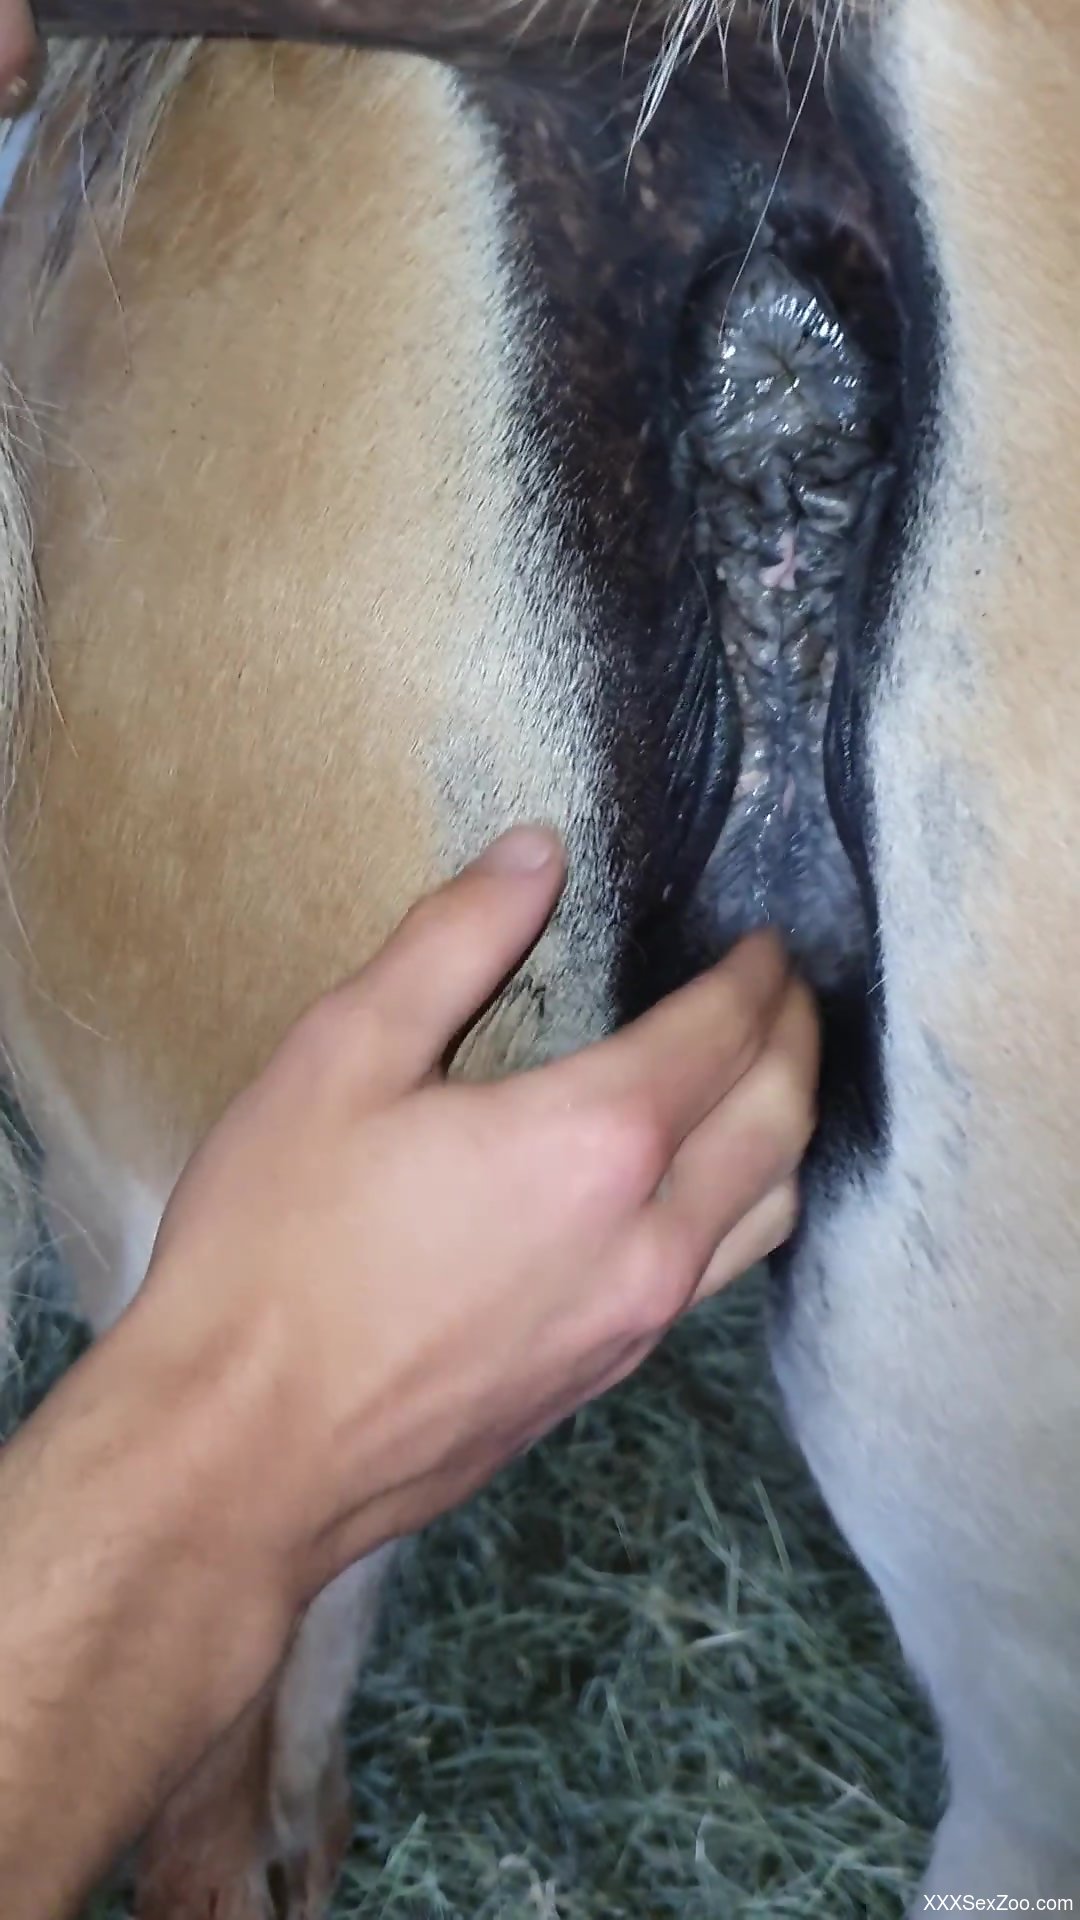 Horny guy finger fucks his female horse in harsh modes